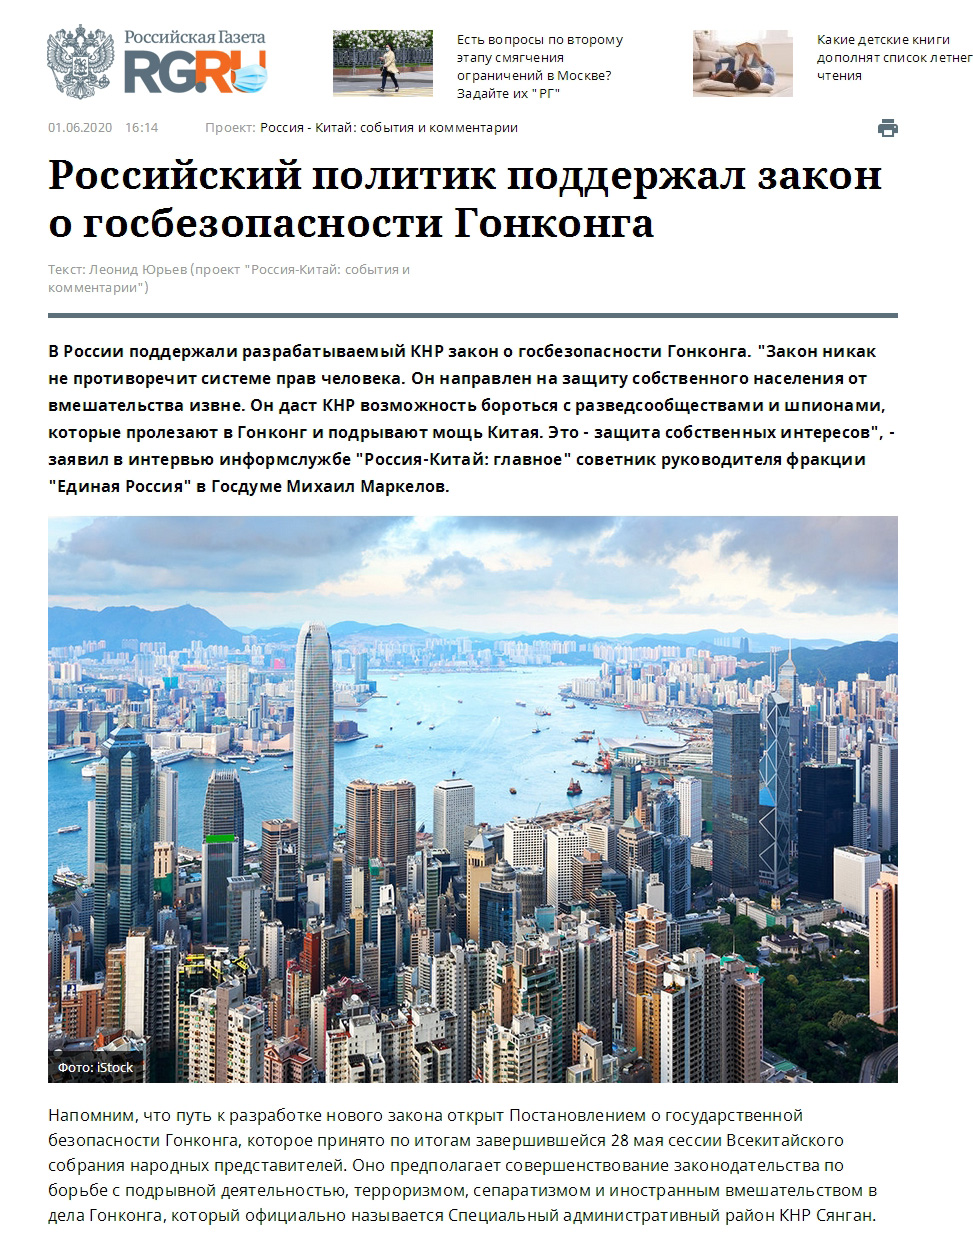 俄罗斯官员力挺香港国安法